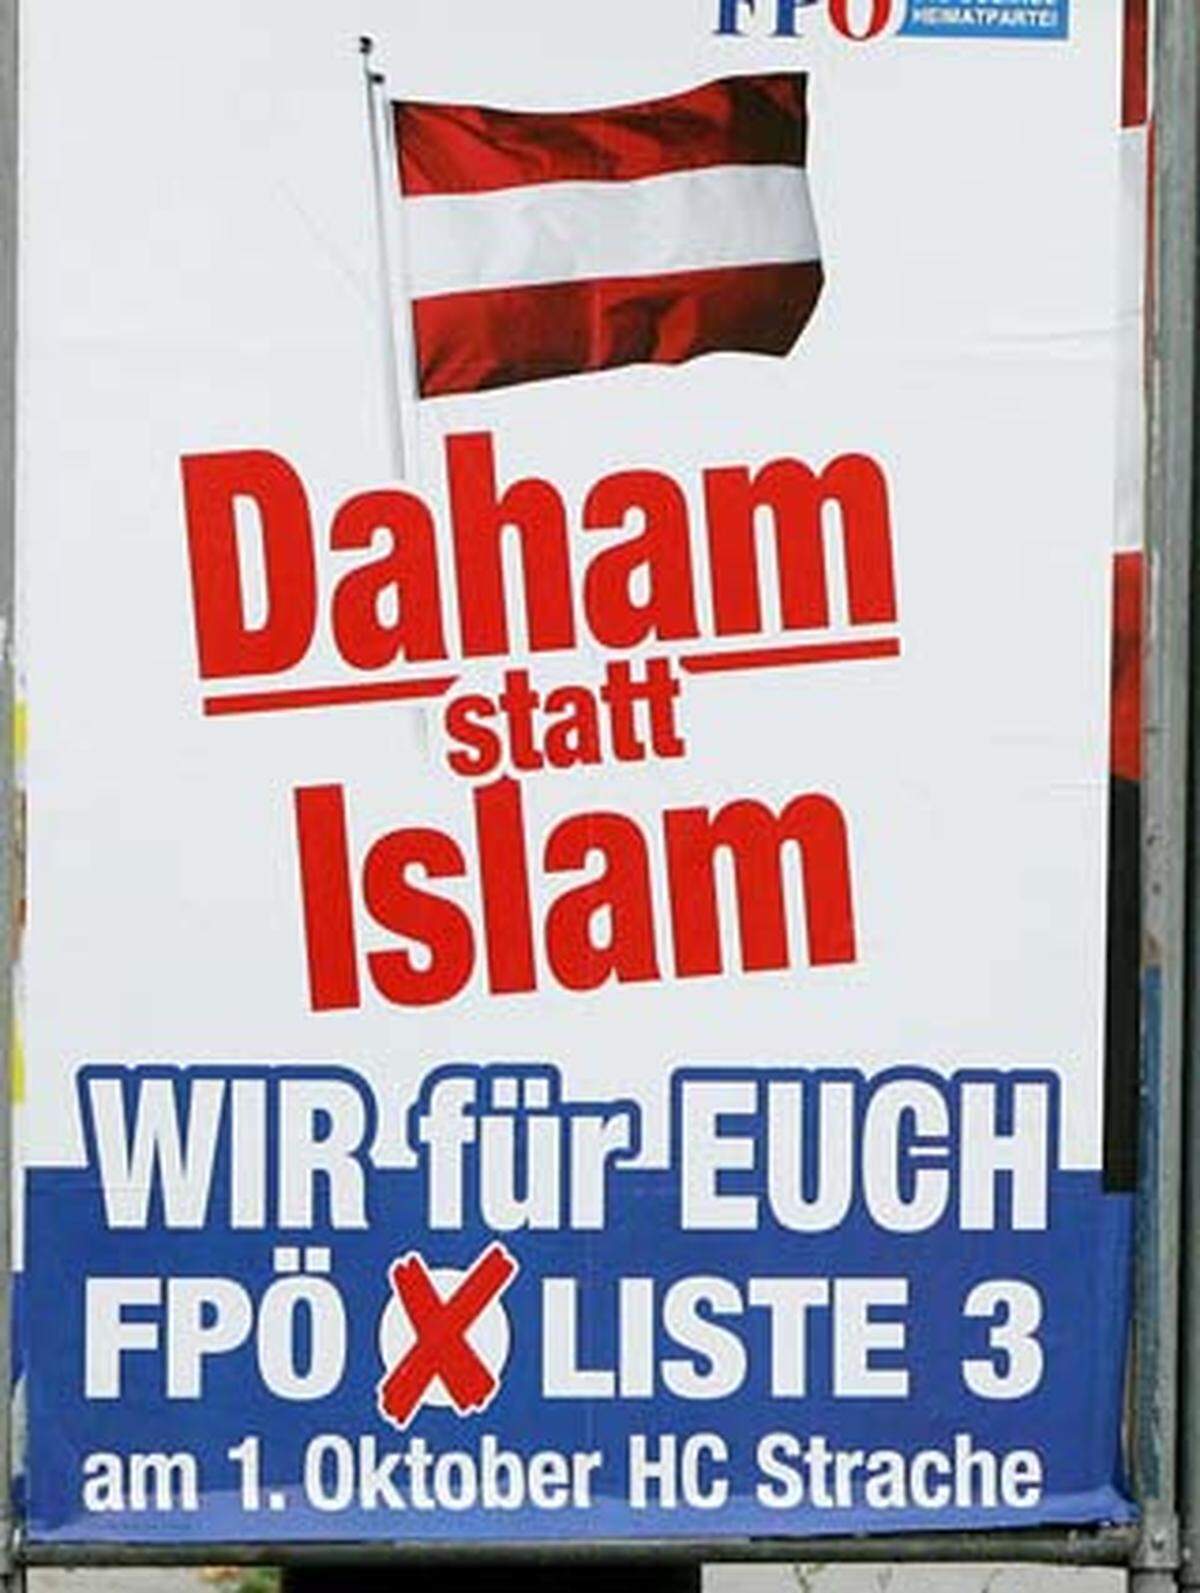 Der aktuelle Wahlsogan der FPÖ für die Wien-Wahl "Mehr Mut für unser 'Wiener Blut' - Zu viel Fremdes tut niemandem gut" sorgt für Empörung. Die Grünen forderten bereits den Stopp der Plakatwelle und erklärten, die Wortwahl der Plakate erinnere an "Nazi-Jargon". Die FPÖ ließ auch schon in der Vergangenheit mit ähnlichen Wortkreationen aufhorchen. Bei der Nationalratswahl 2006 etwa zierte der Reim "Daham statt Islam" ihre Plakate.Hier ein Überblick über andere polarisierende Wahlplakate.